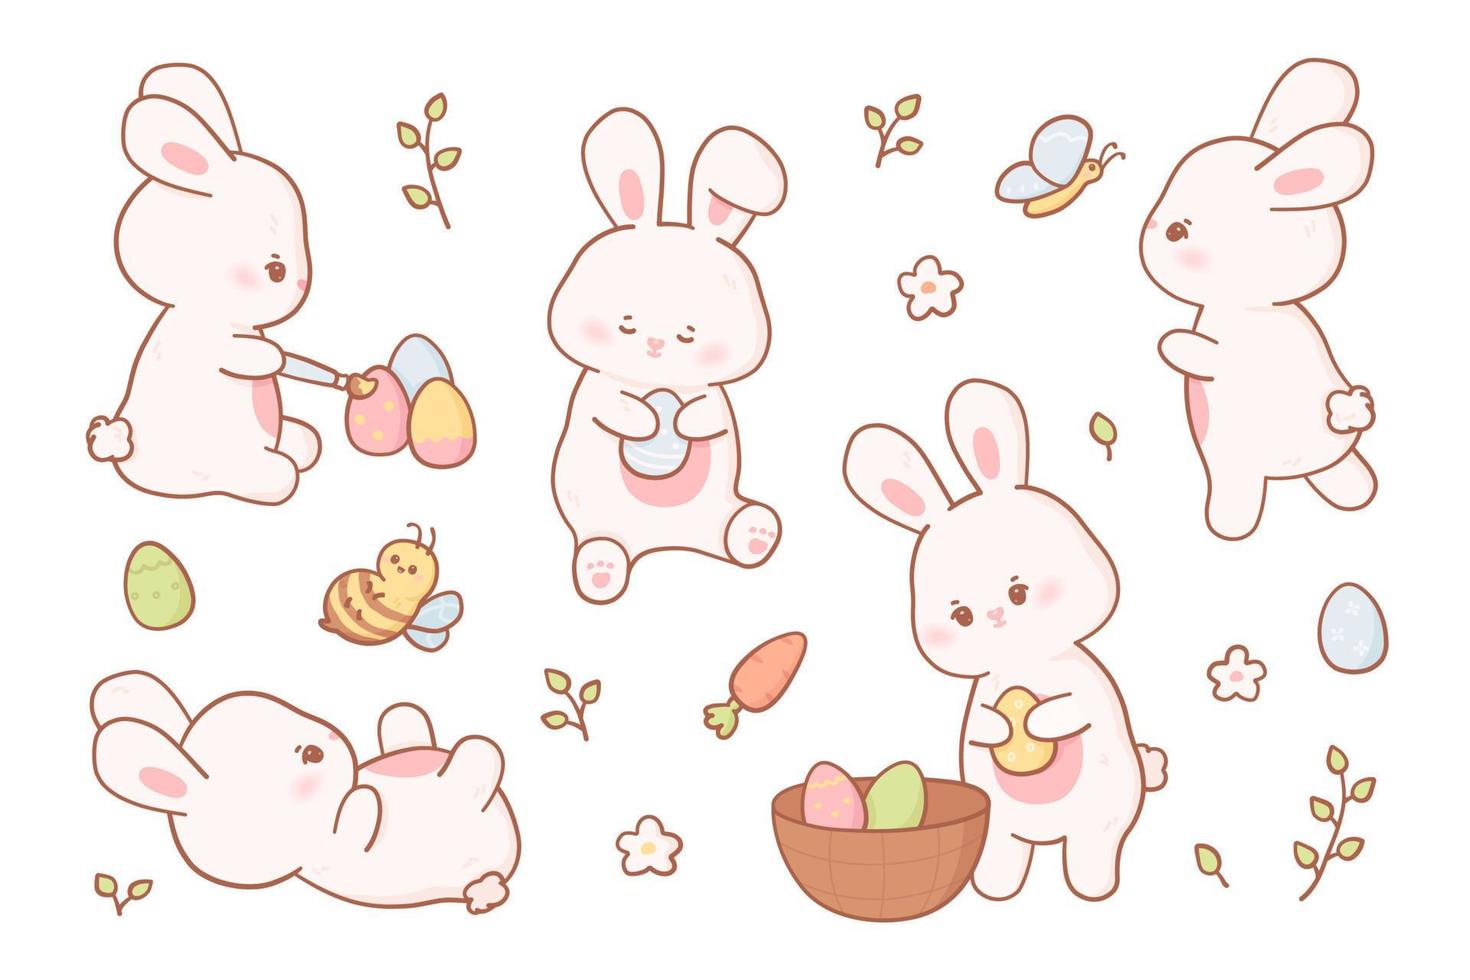 Pascua de Resurrección conejito en kawaii estilo y pastel colores. vector colección de dibujos animados conejos en diferente poses con huevos, abeja y mariposa